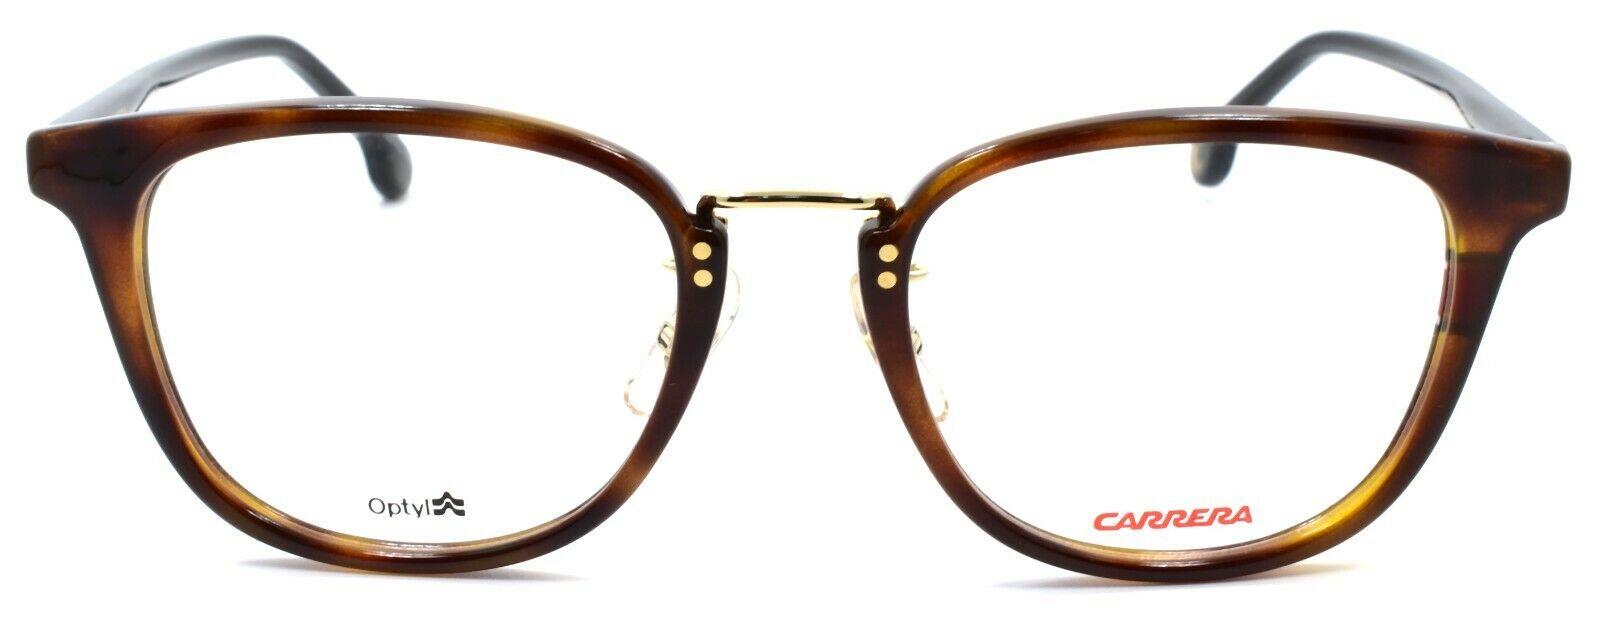 2-Carrera 178/F 086 Eyeglasses Frames 50-20-145 Dark Havana-716736094649-IKSpecs